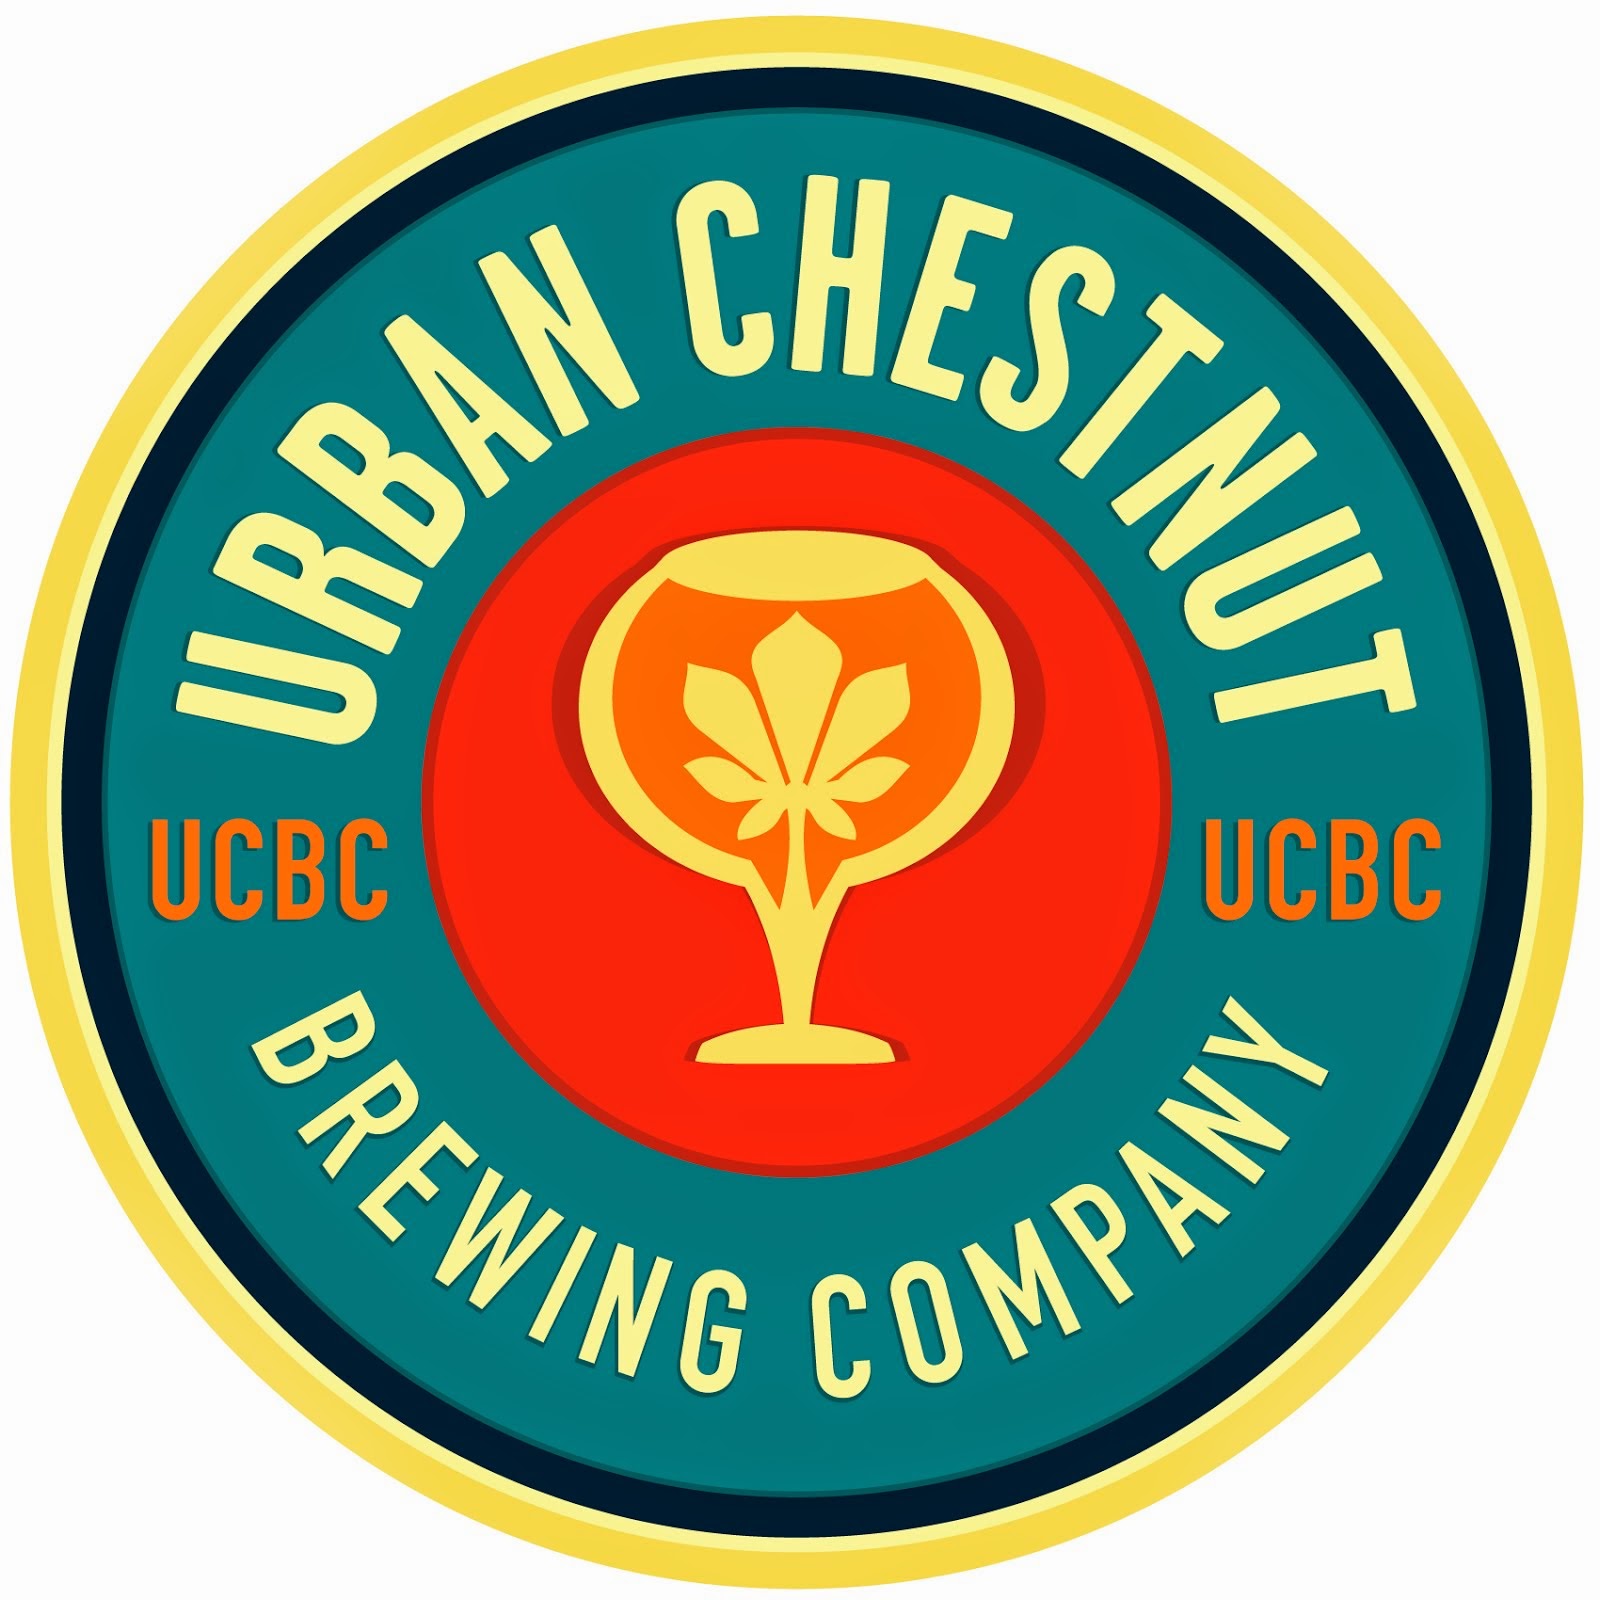 Urban Chestnut Brewing Company